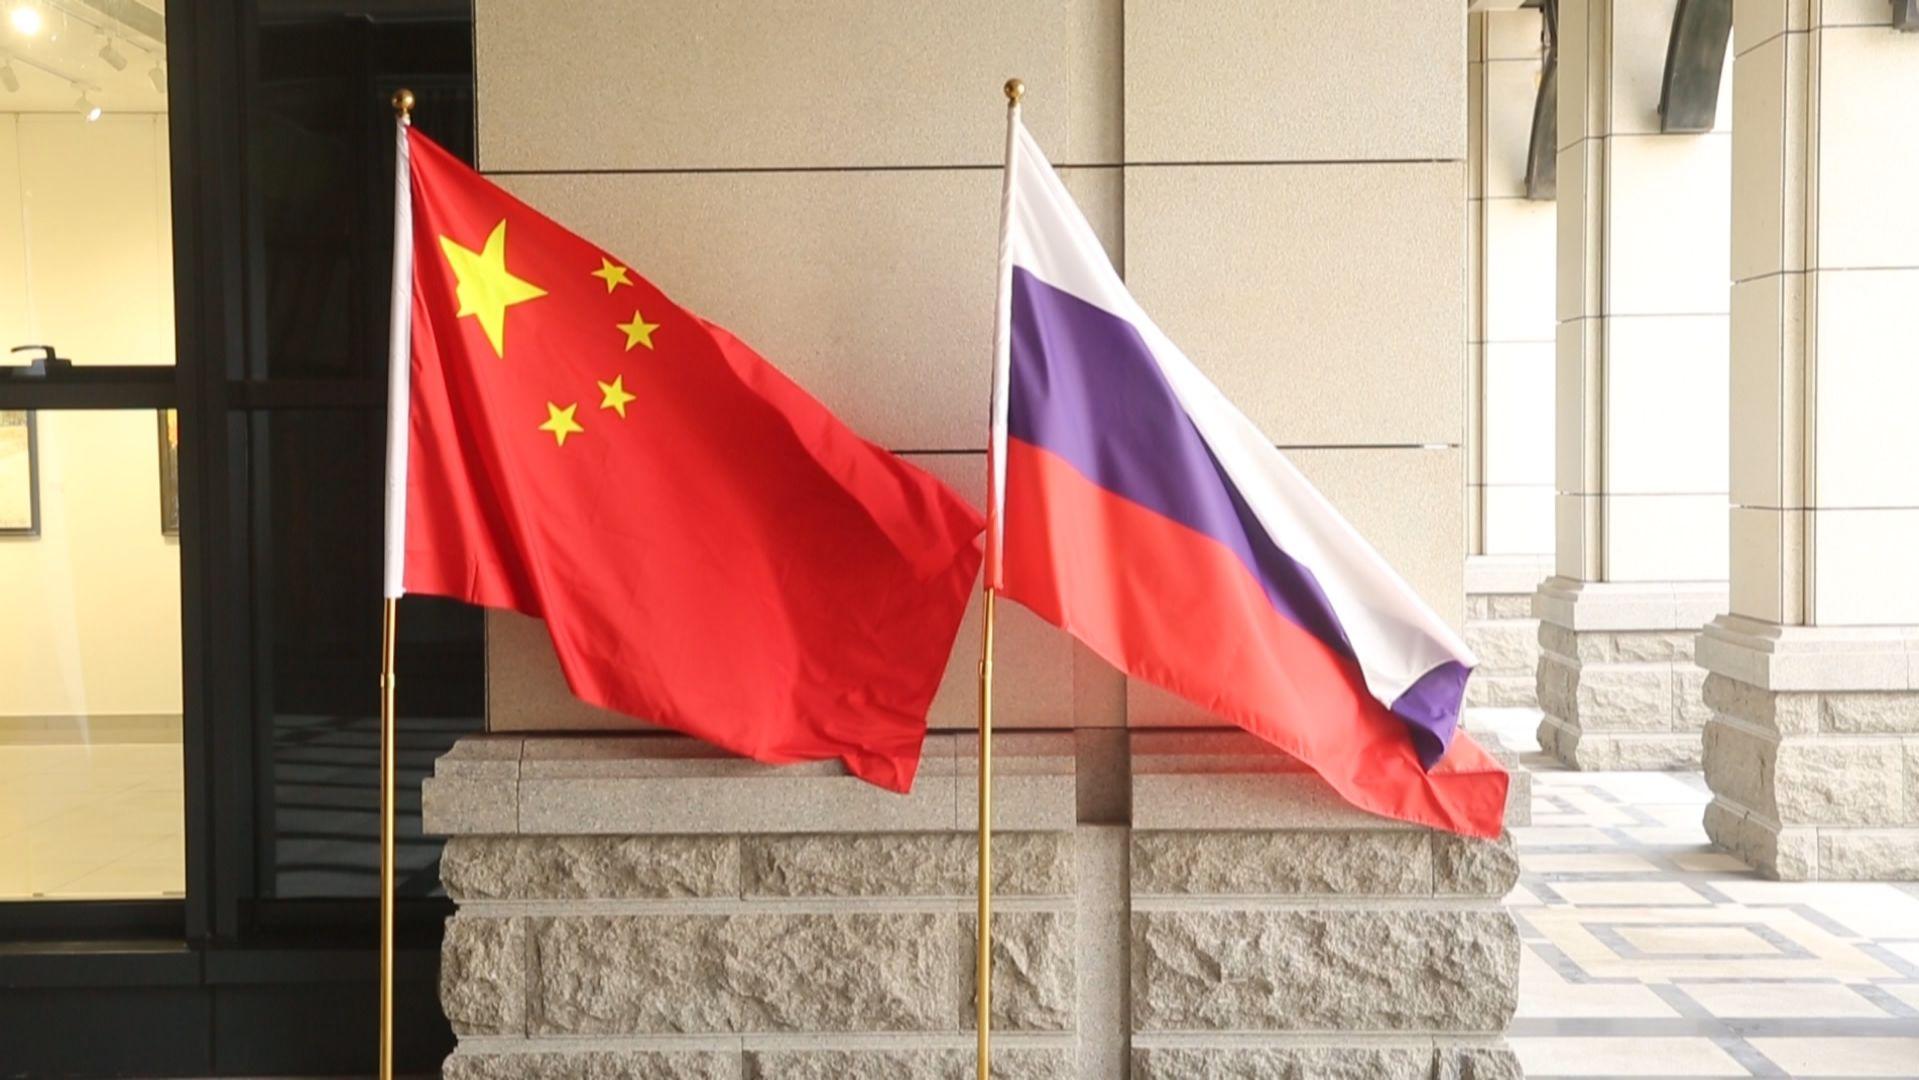 中国俄罗斯国旗连体图片